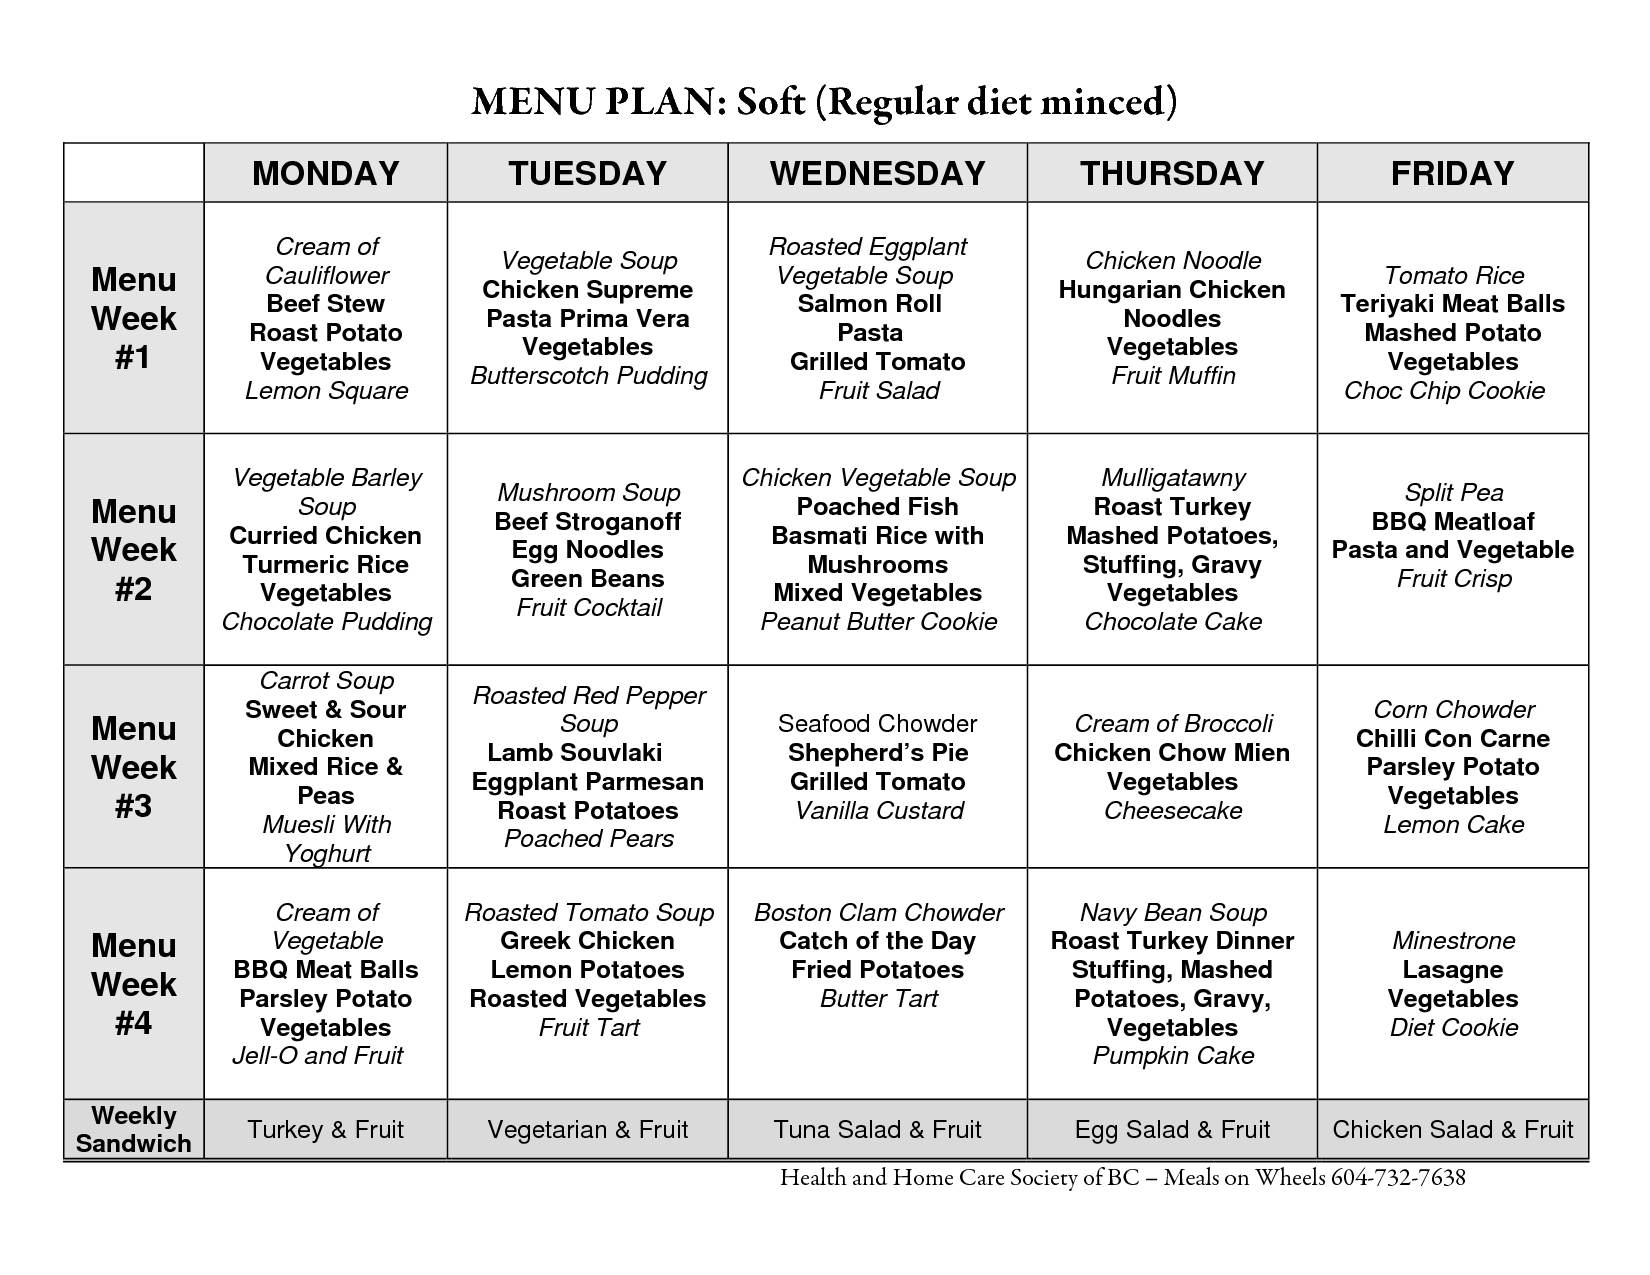 Atkins Diet Menu Plan Image